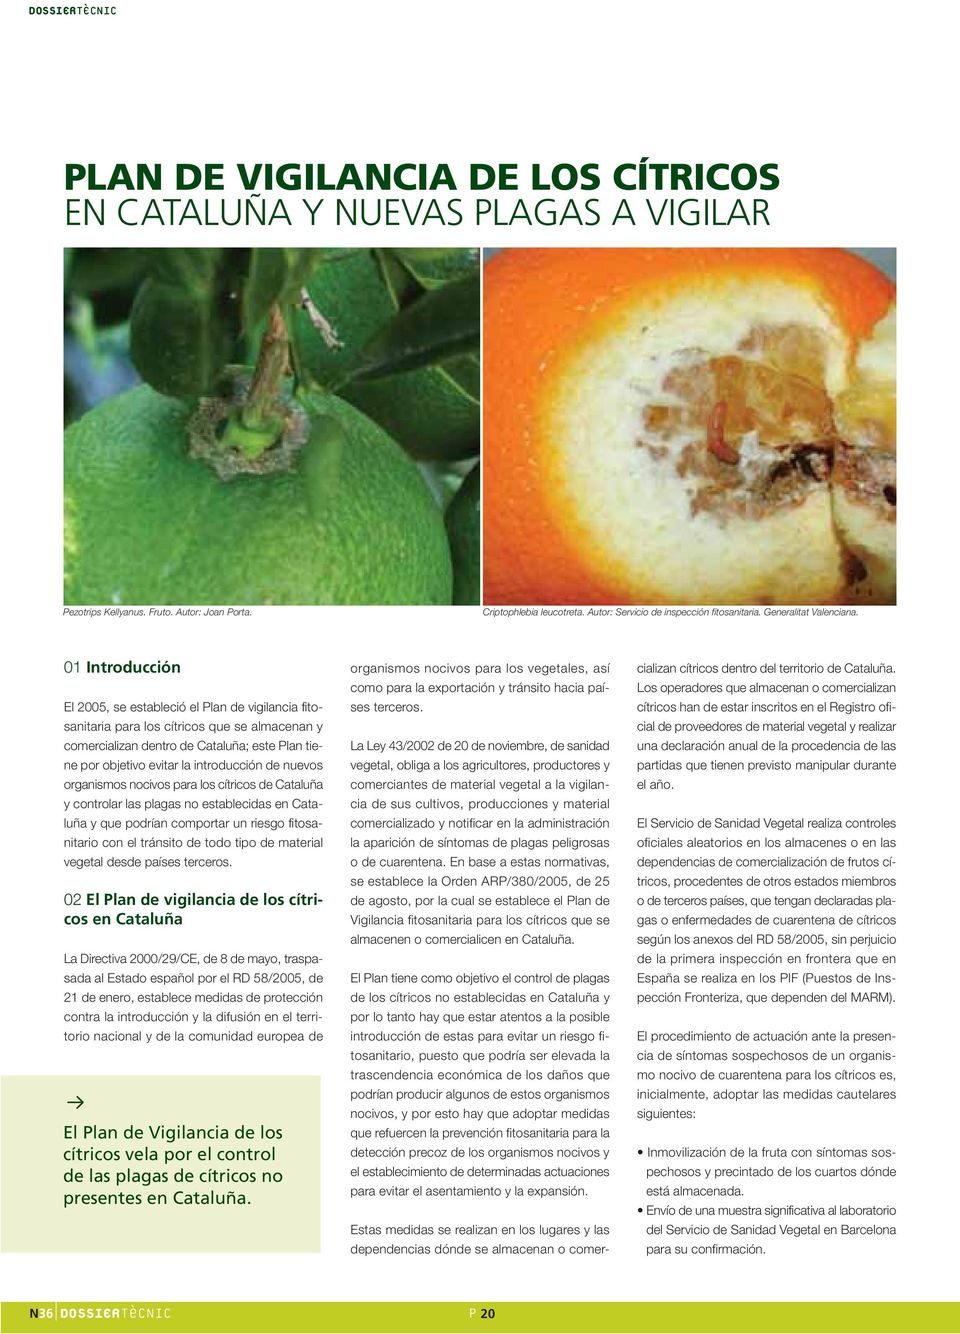 01 Introducción El 2005, se estableció el Plan de vigilancia fitosanitaria para los cítricos que se almacenan y comercializan dentro de Cataluña; este Plan tiene por objetivo evitar la introducción